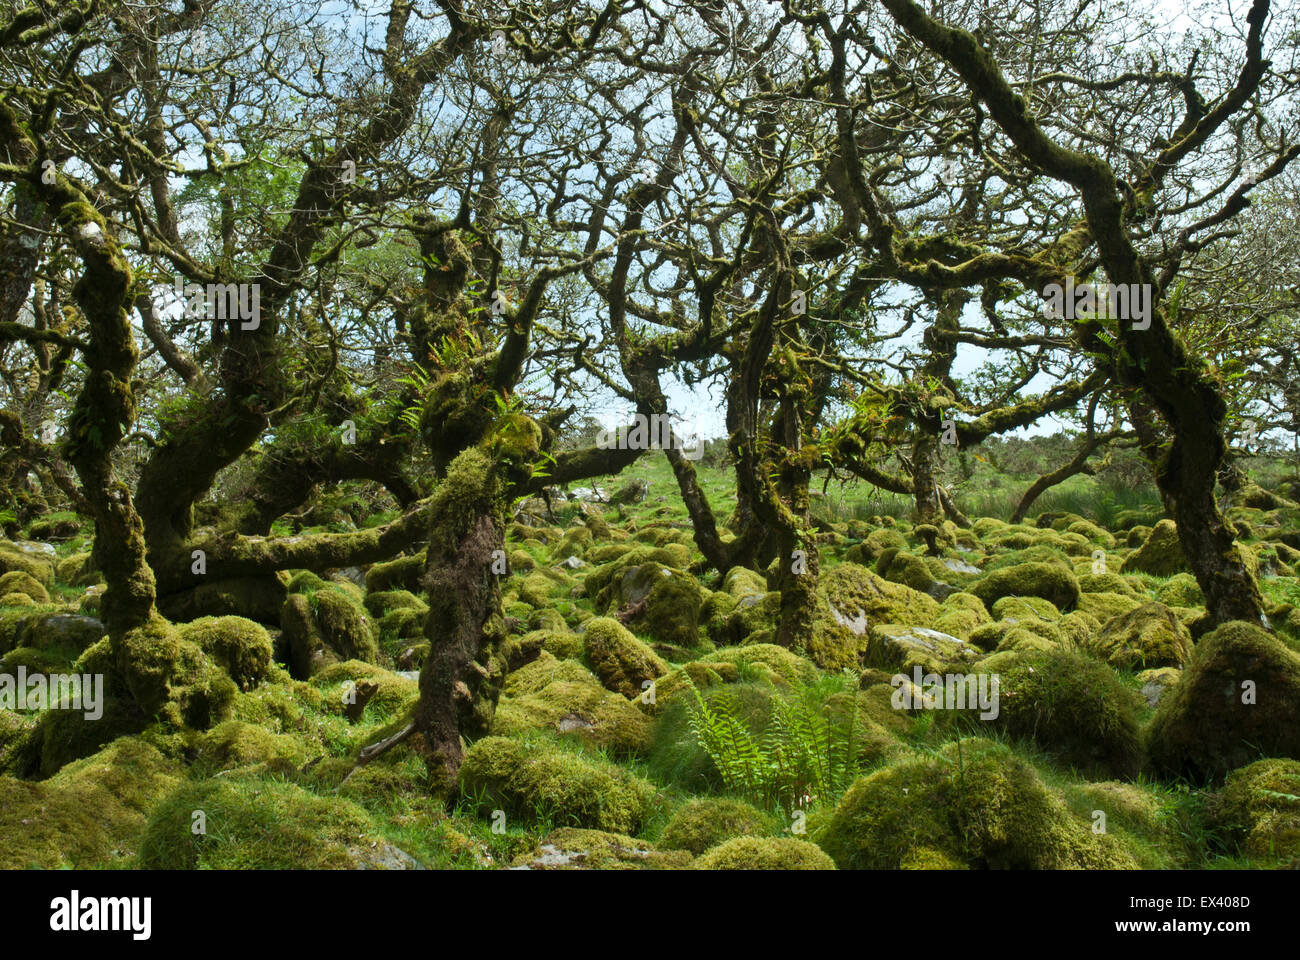 Wistman il legno, Dartmoor Devon UK. Nodose antica quercia nana e massi di granito coperte in verdeggianti muschi e felci. Foto Stock